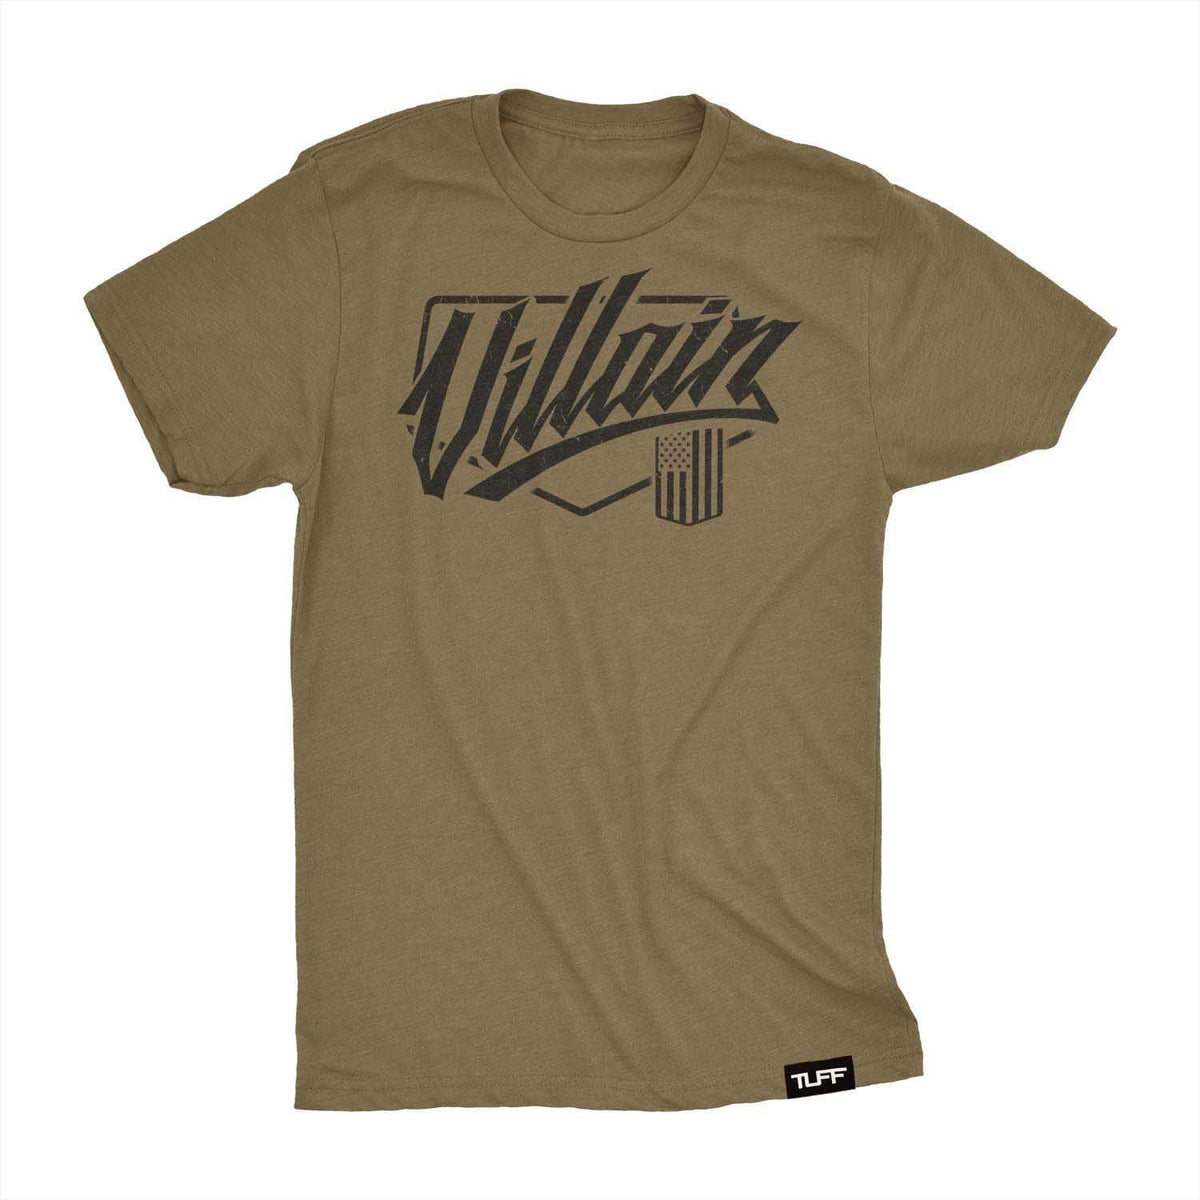 Villain Script Tee T-shirt